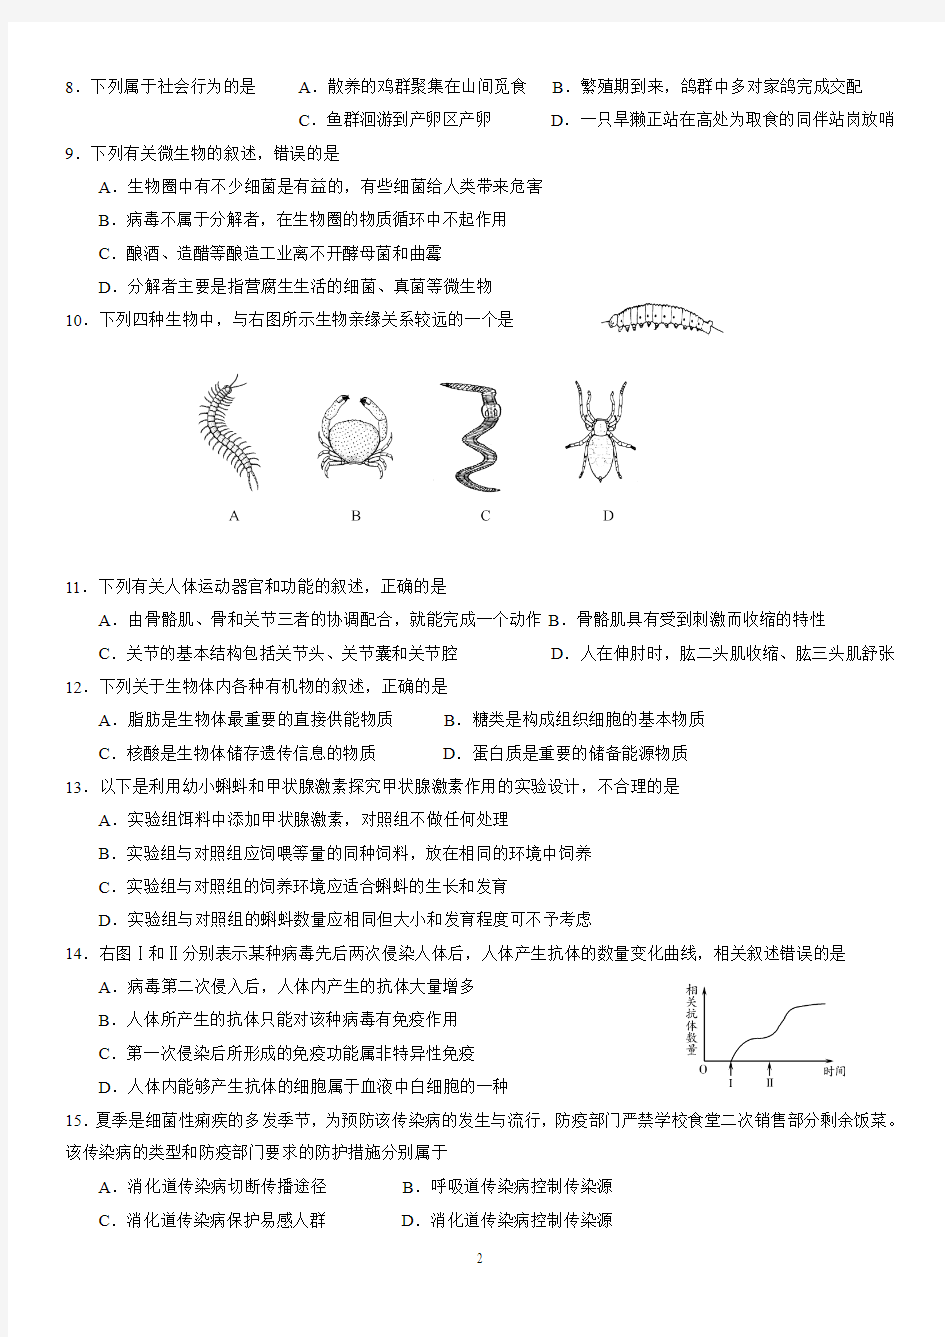 (已整理)2014初中潍坊生物学业水平考试题